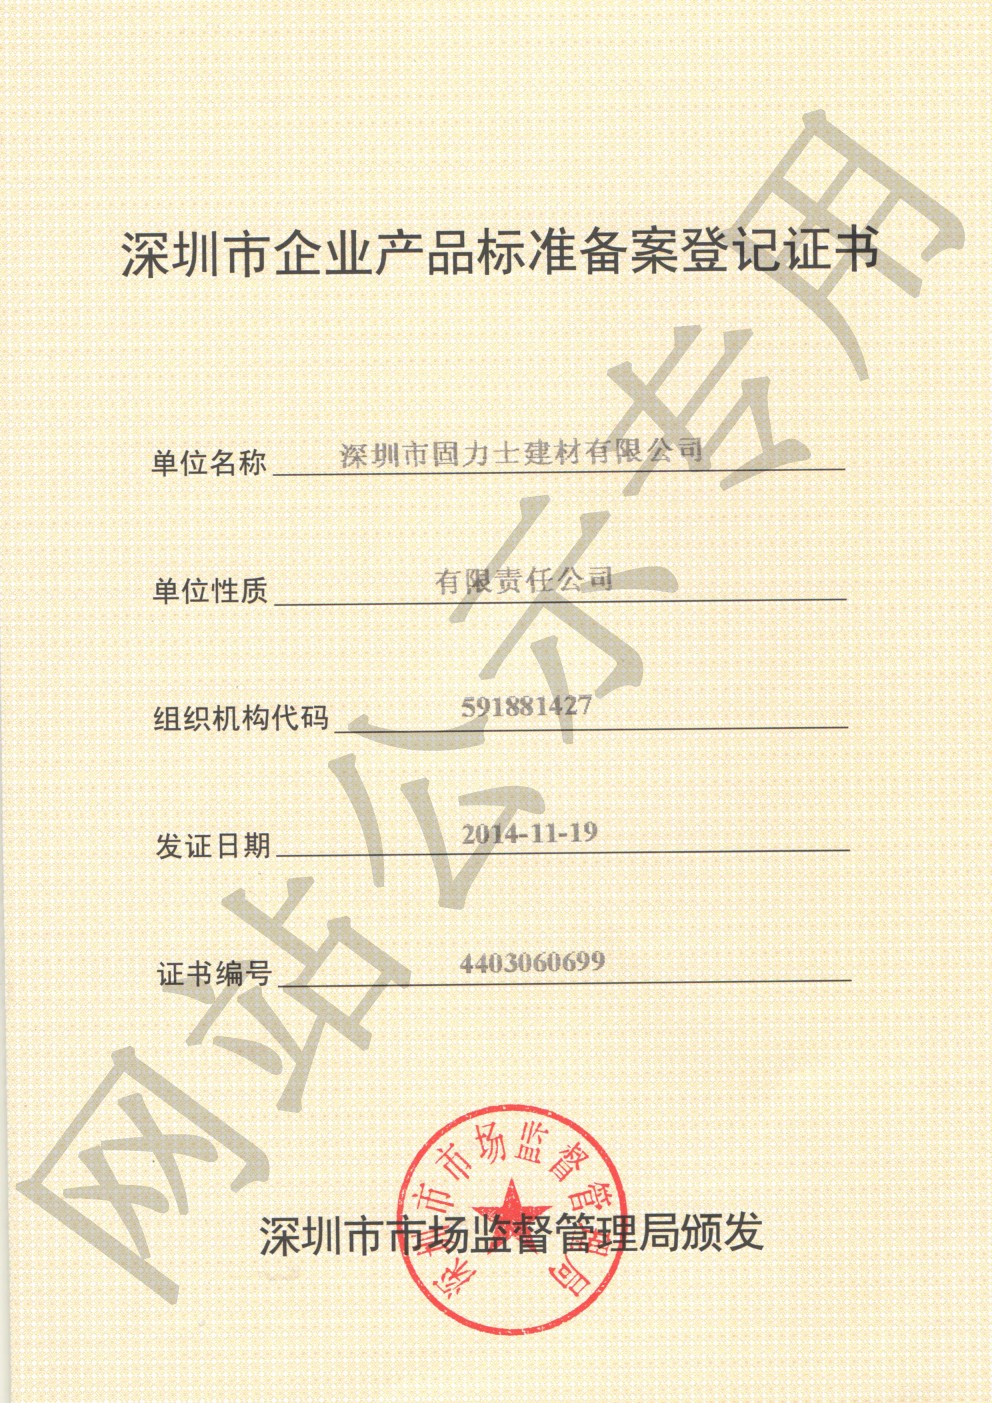 扎囊企业产品标准登记证书